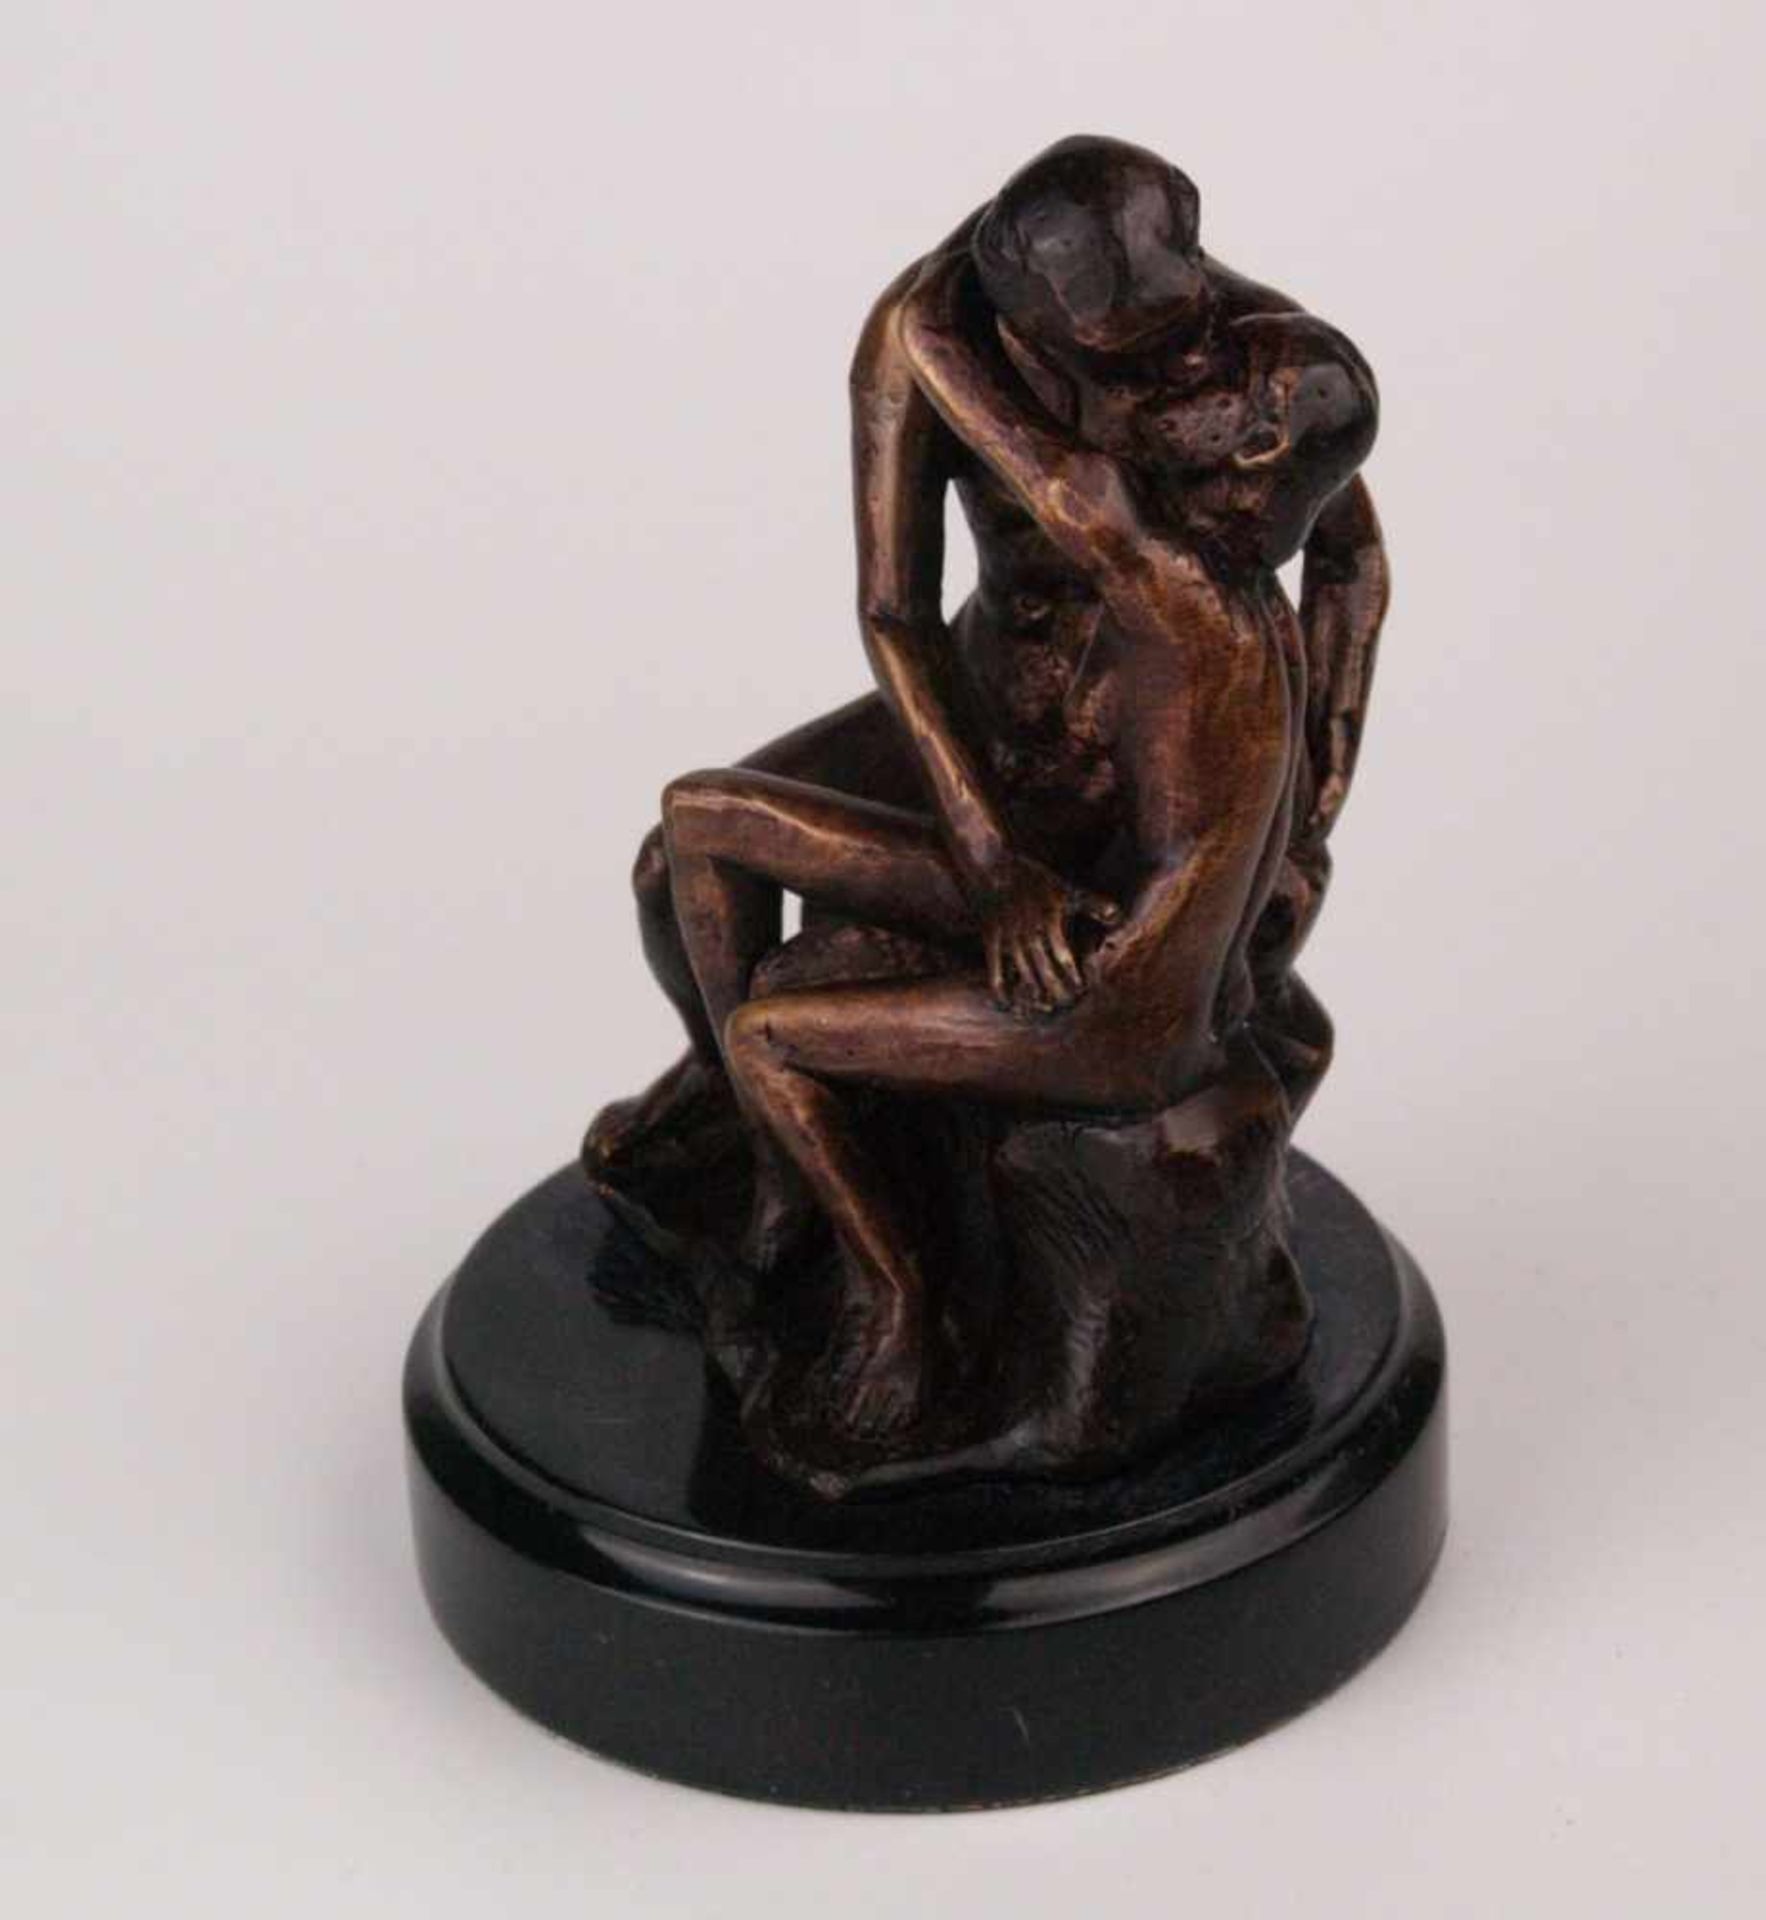 Rodin, Auguste (1840-1917,nach) - "Der Kuss" (Original von 1886) Darstellung eines sich umarmenden